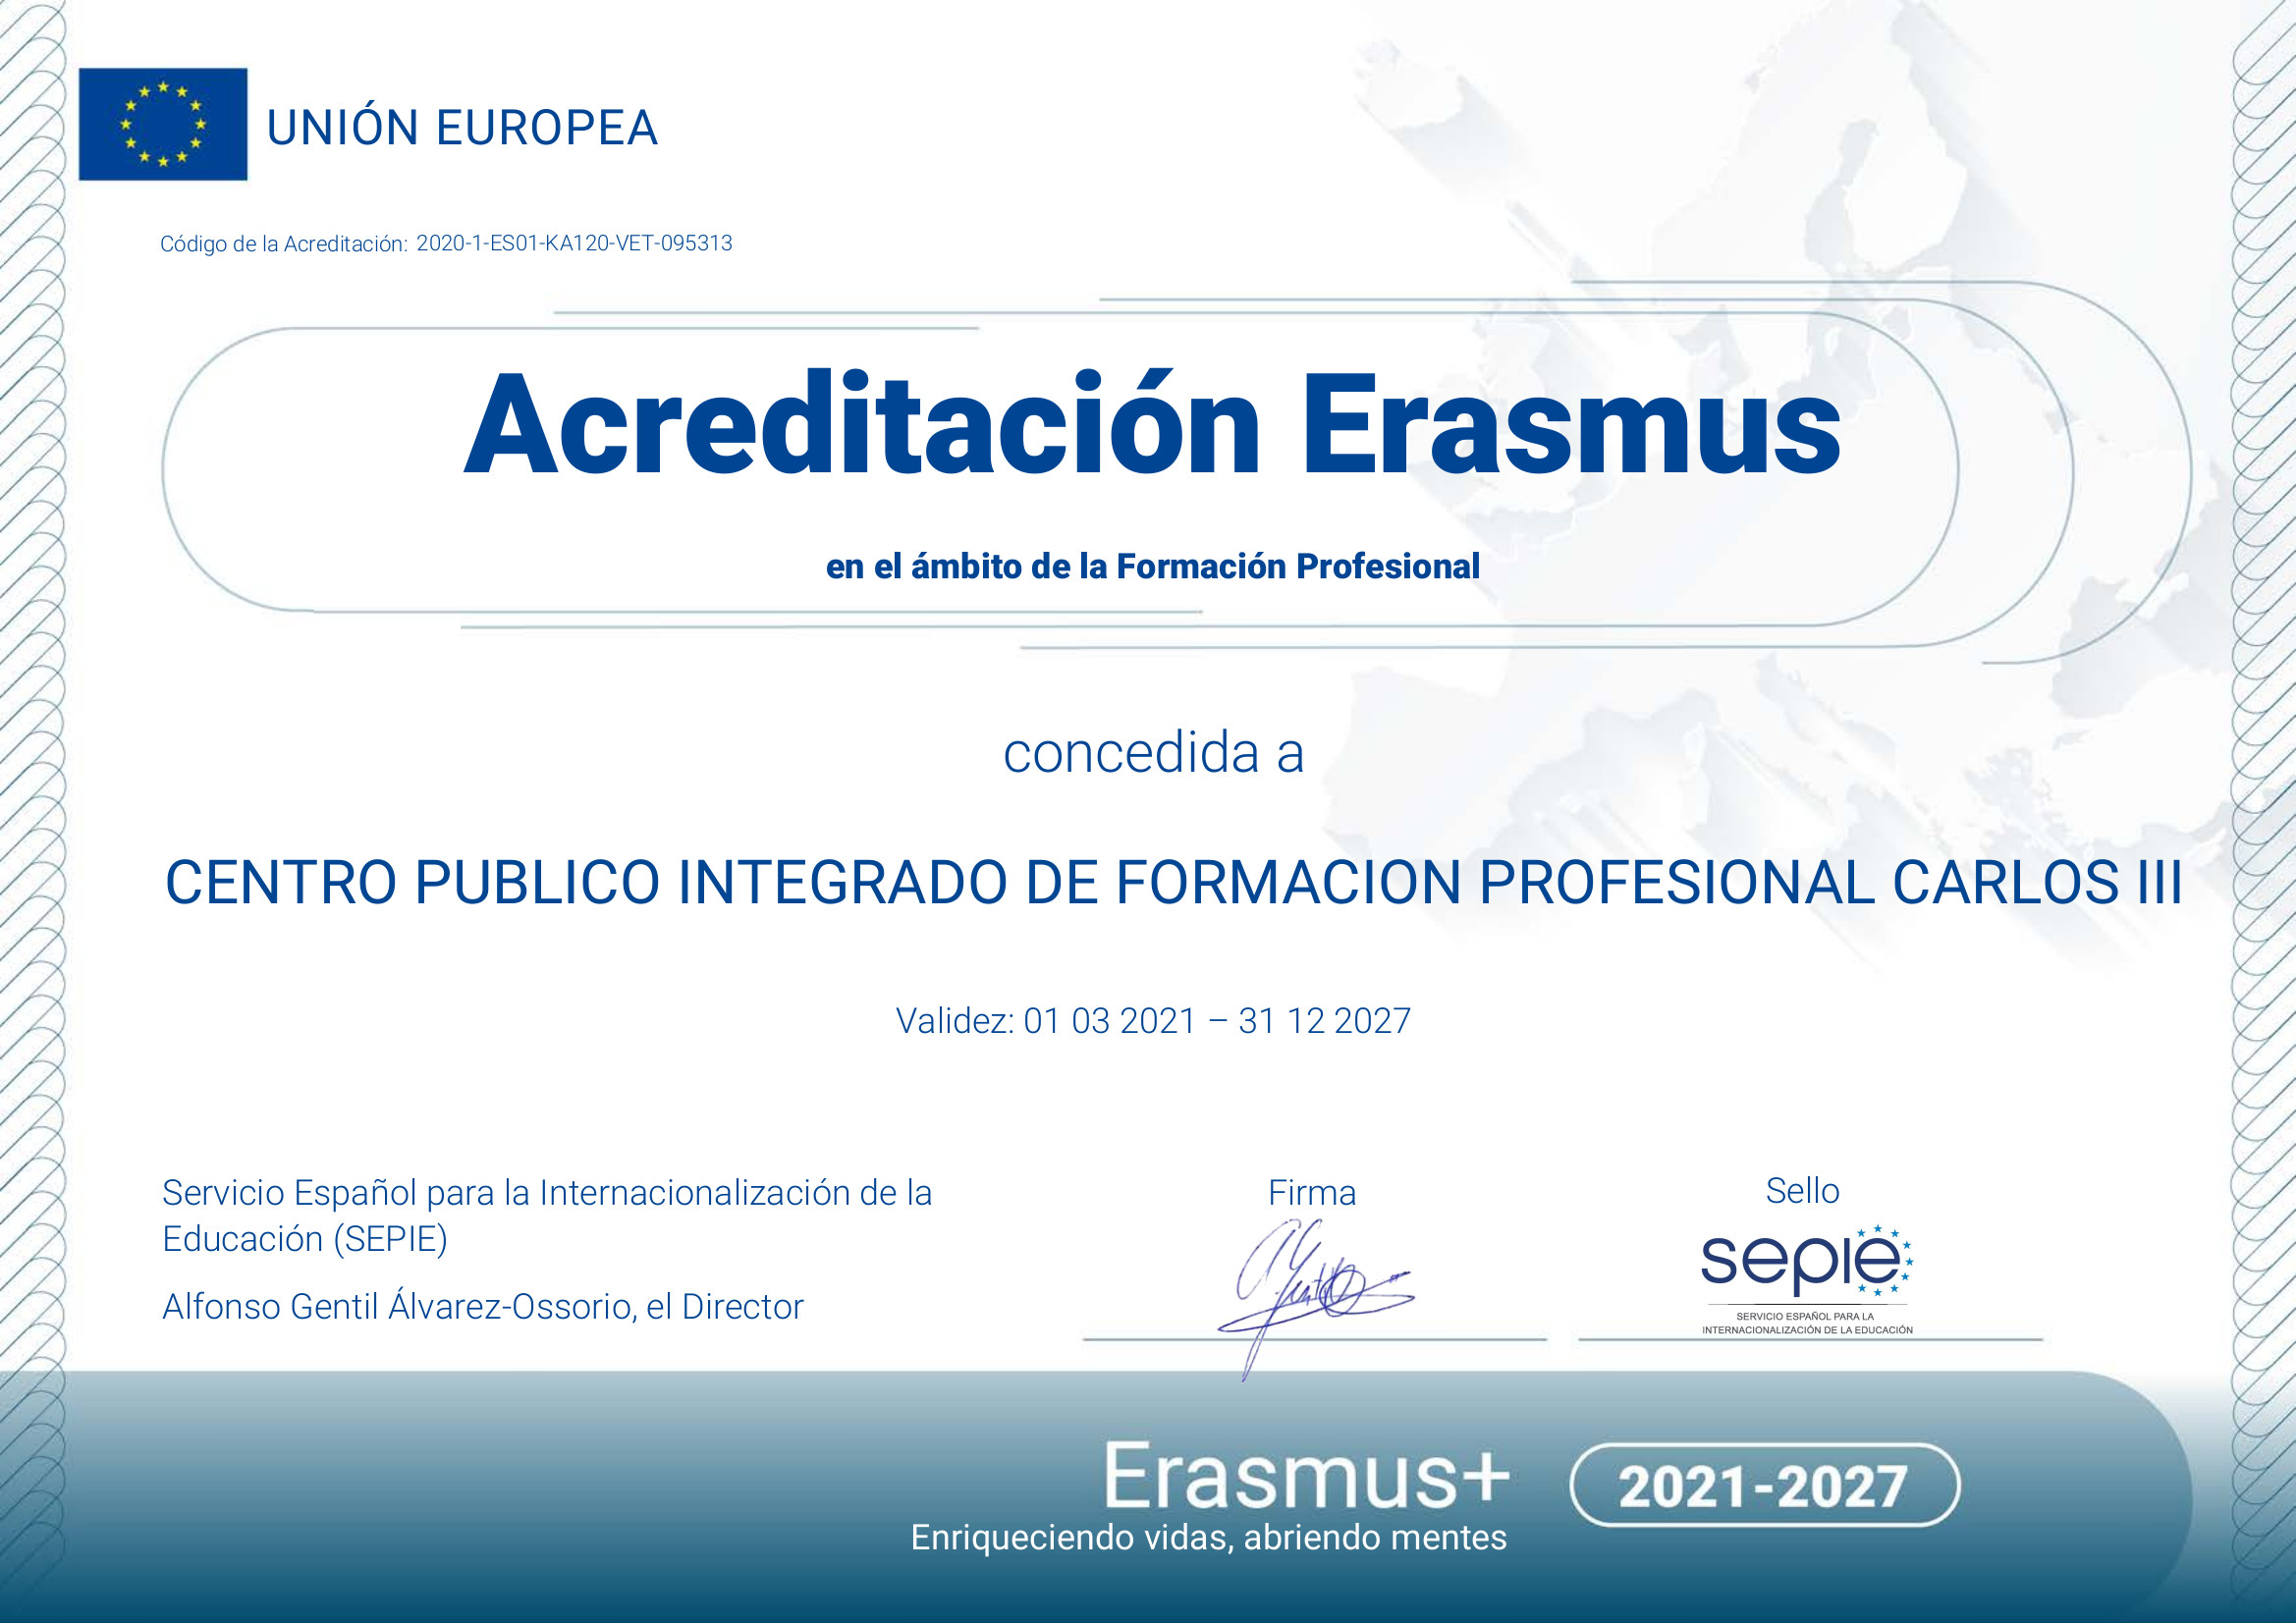 Acreditación Erasmus en el ámbito de la Formación Profesional concedida a Centro Público de Formación Profesional Carlos III